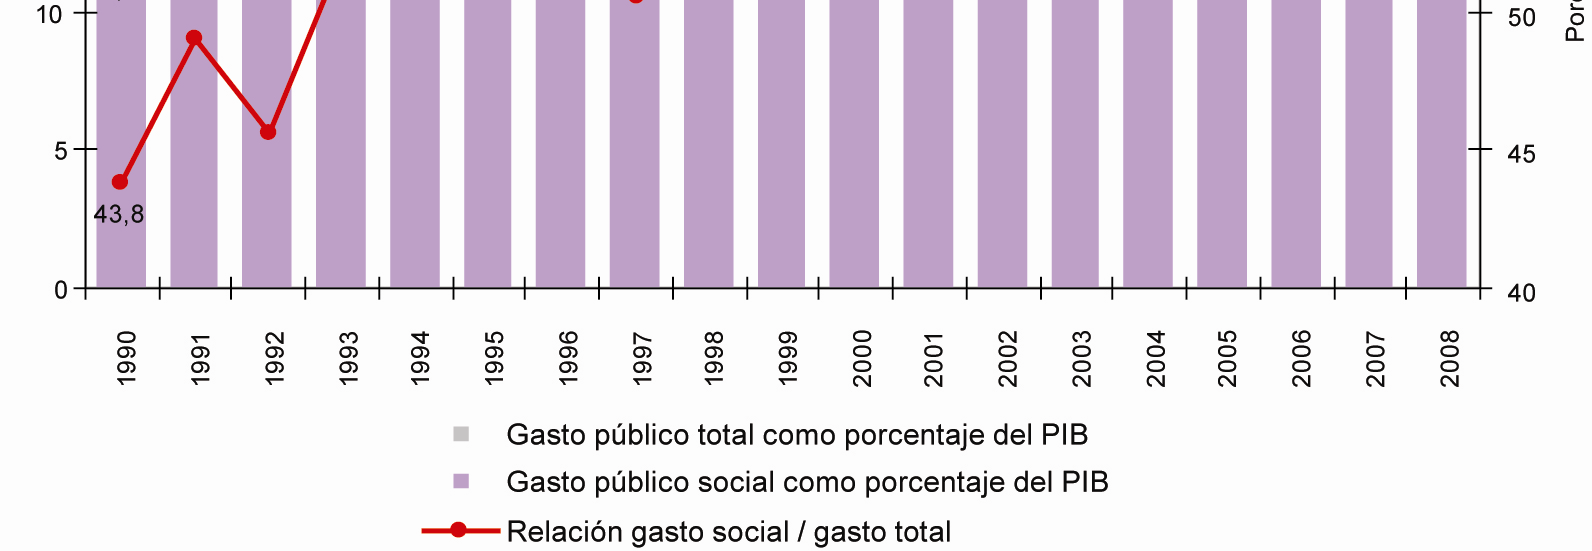 Además, el gasto público social en América Latina ha incrementado su participación en el gasto público total y también como porcentaje del PIB AMÉRICA LATINA (21 PAÍSES): GASTO PÚBLICO TOTAL Y GASTO